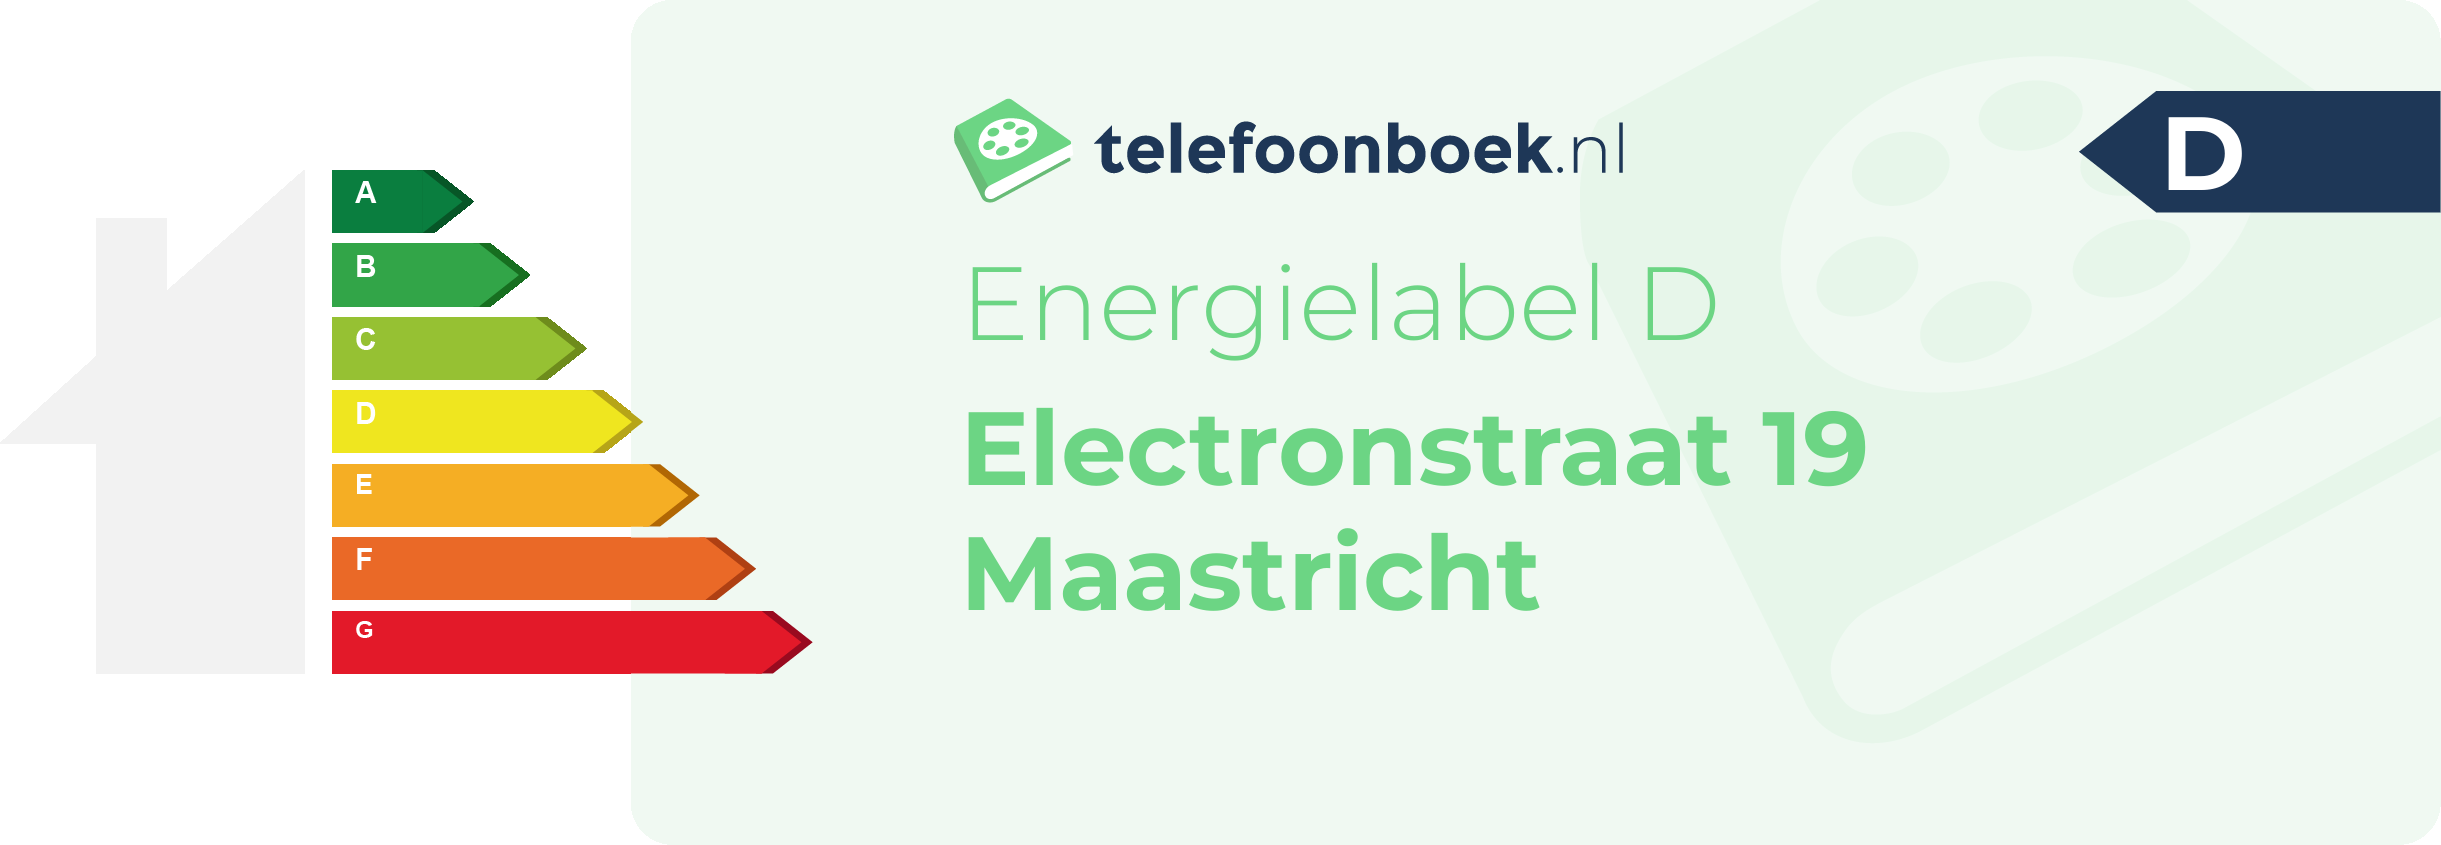 Energielabel Electronstraat 19 Maastricht